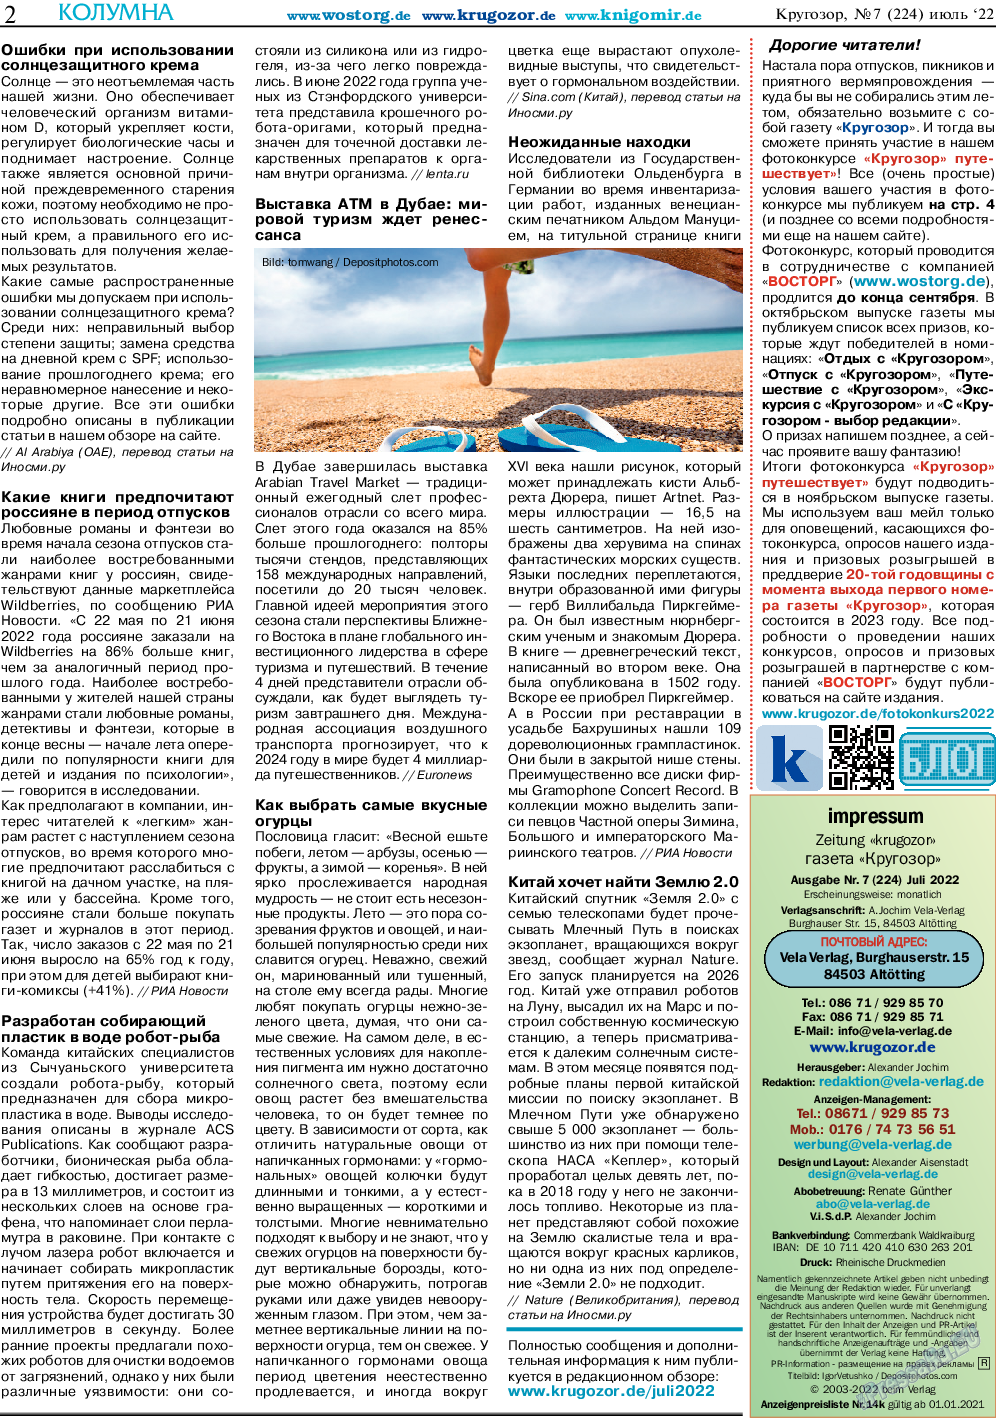 Кругозор, газета. 2022 №7 стр.2